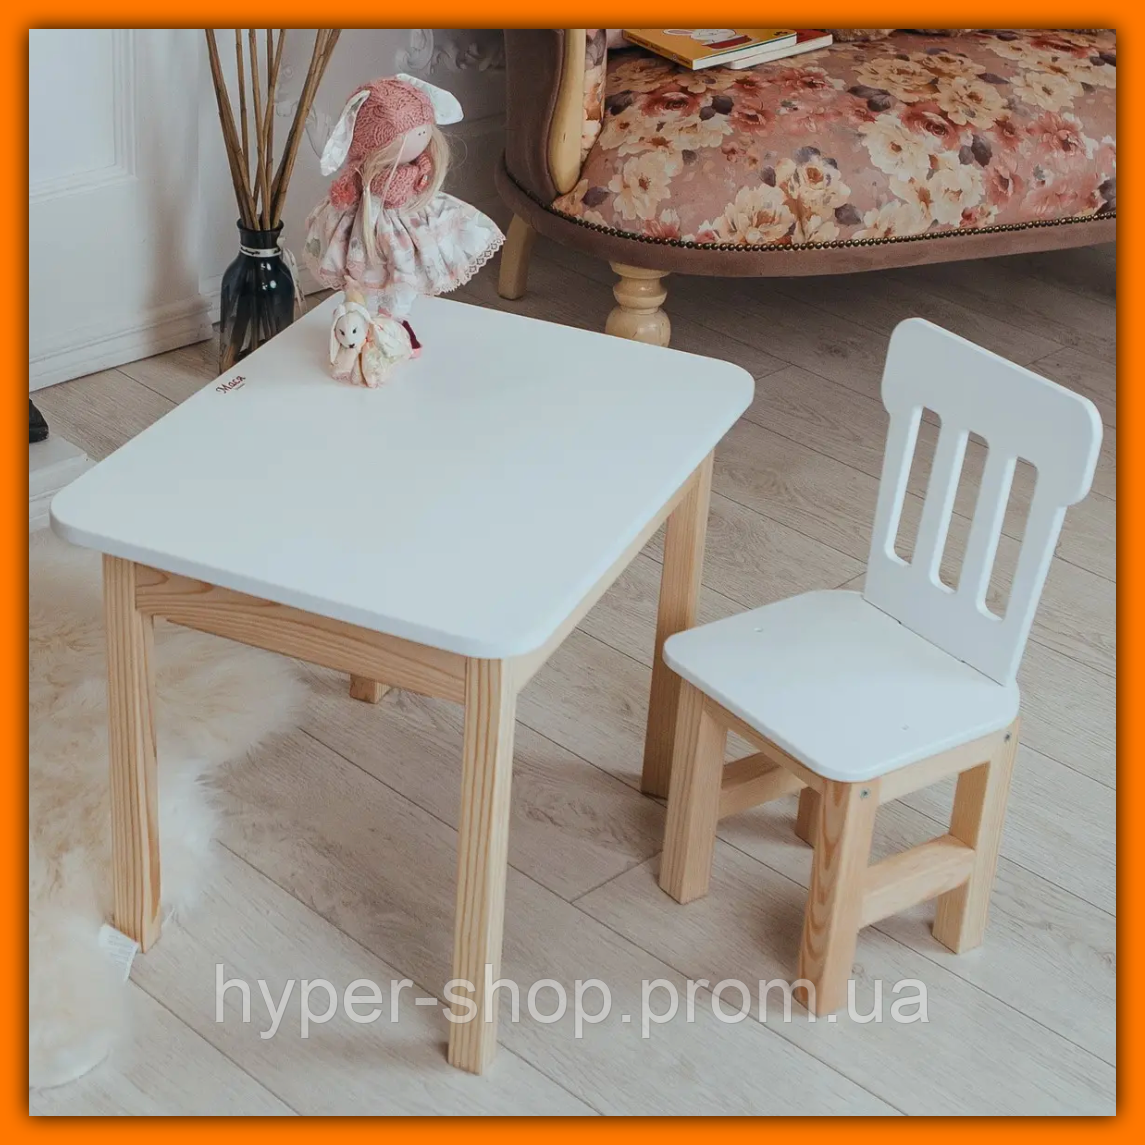 Дитячий столик зі стільчиком із шухлядою для олівців і розмальовок із дерева, набори дитячих меблів столик стілець